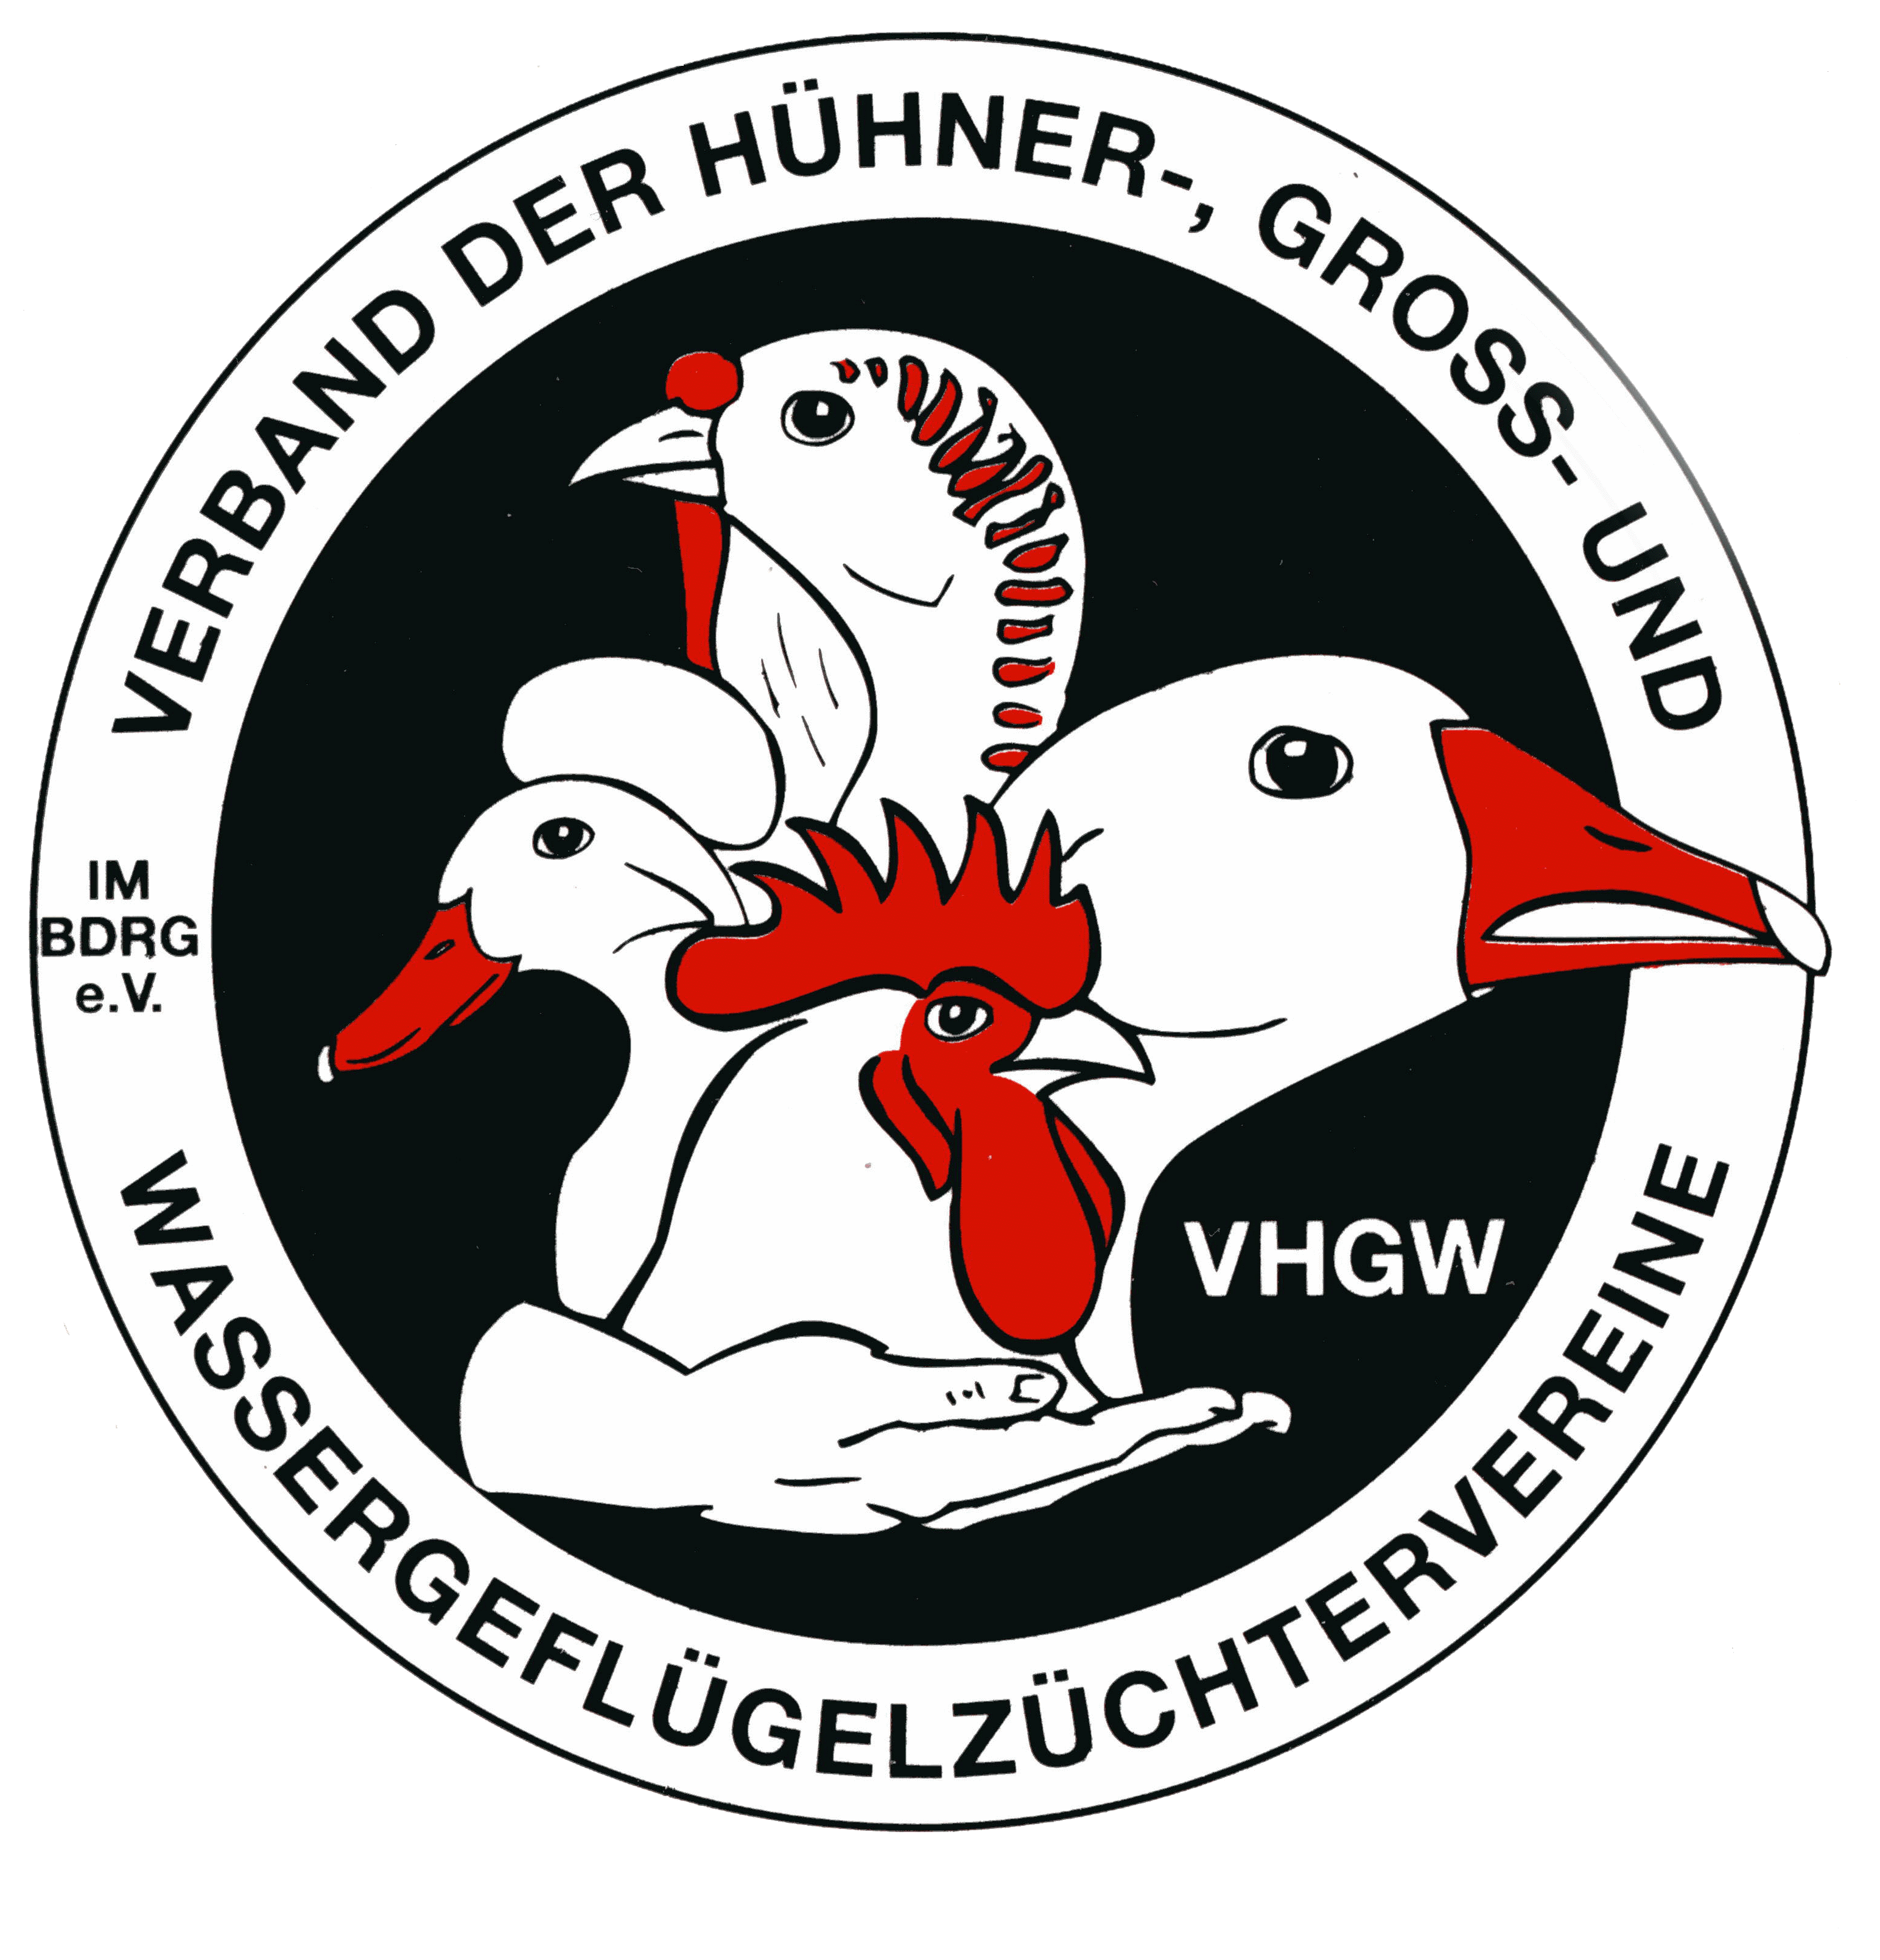 http://www.vhgw.de/images/logo_transparent.gif